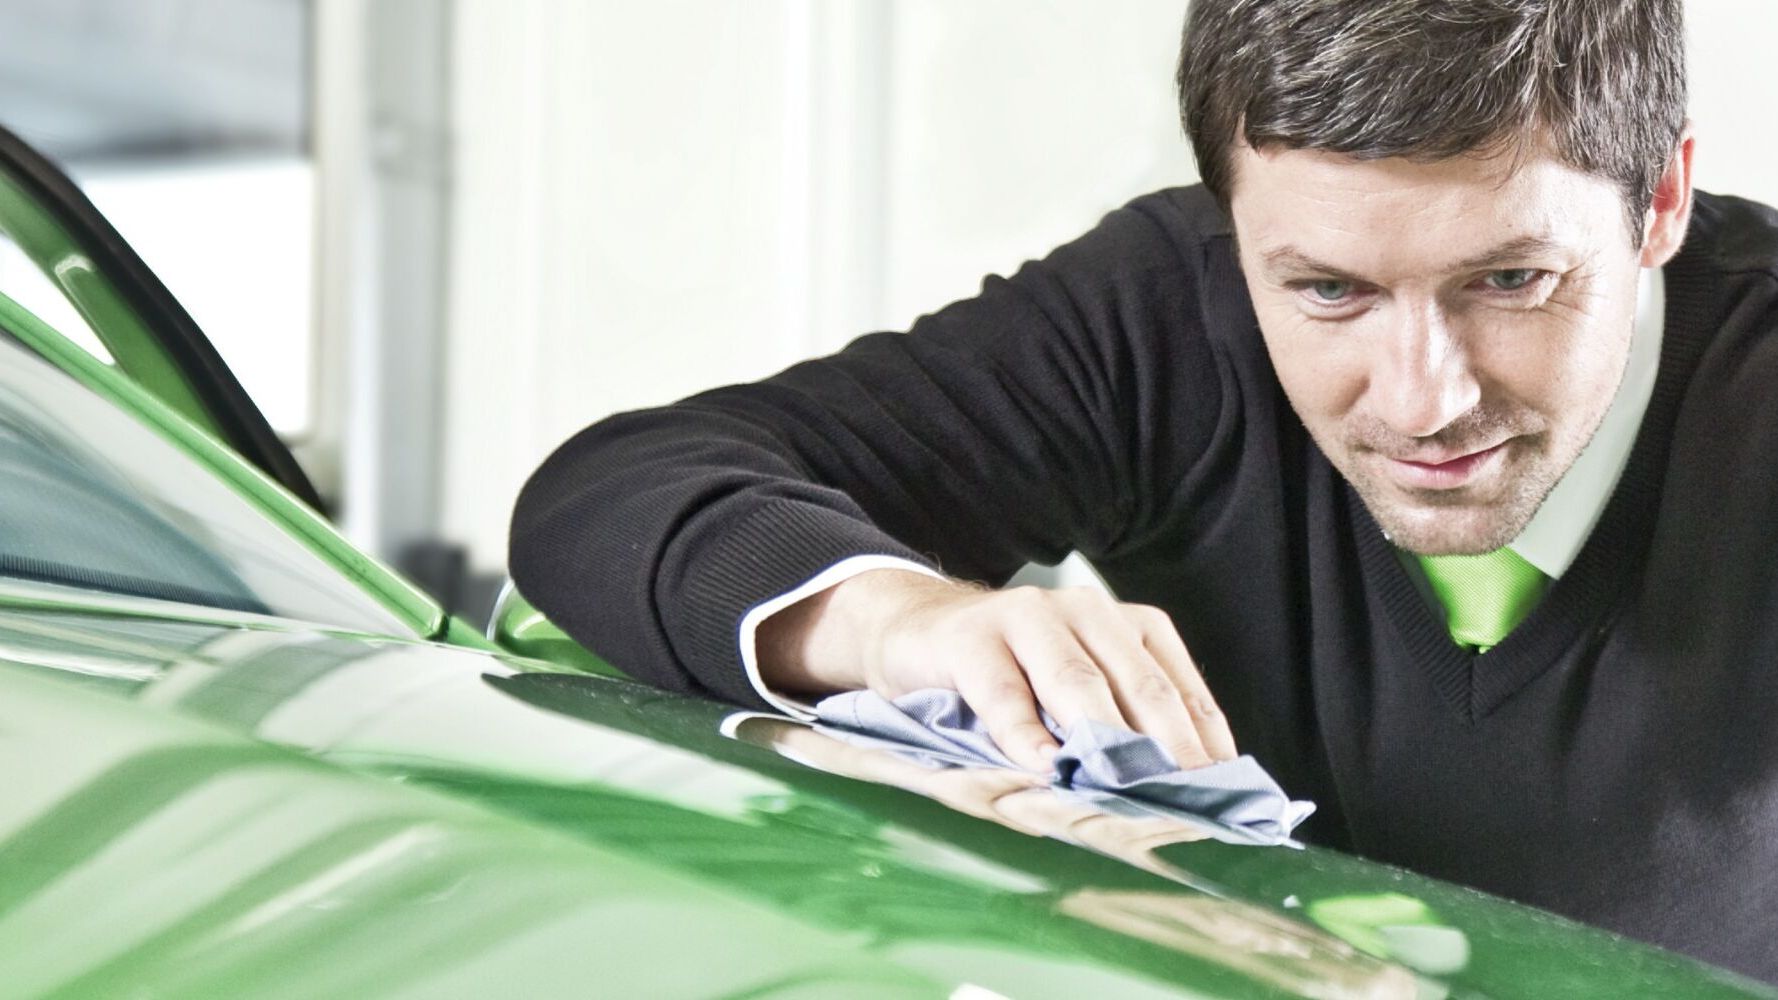 Die Front eines Škoda Modells wird poliert